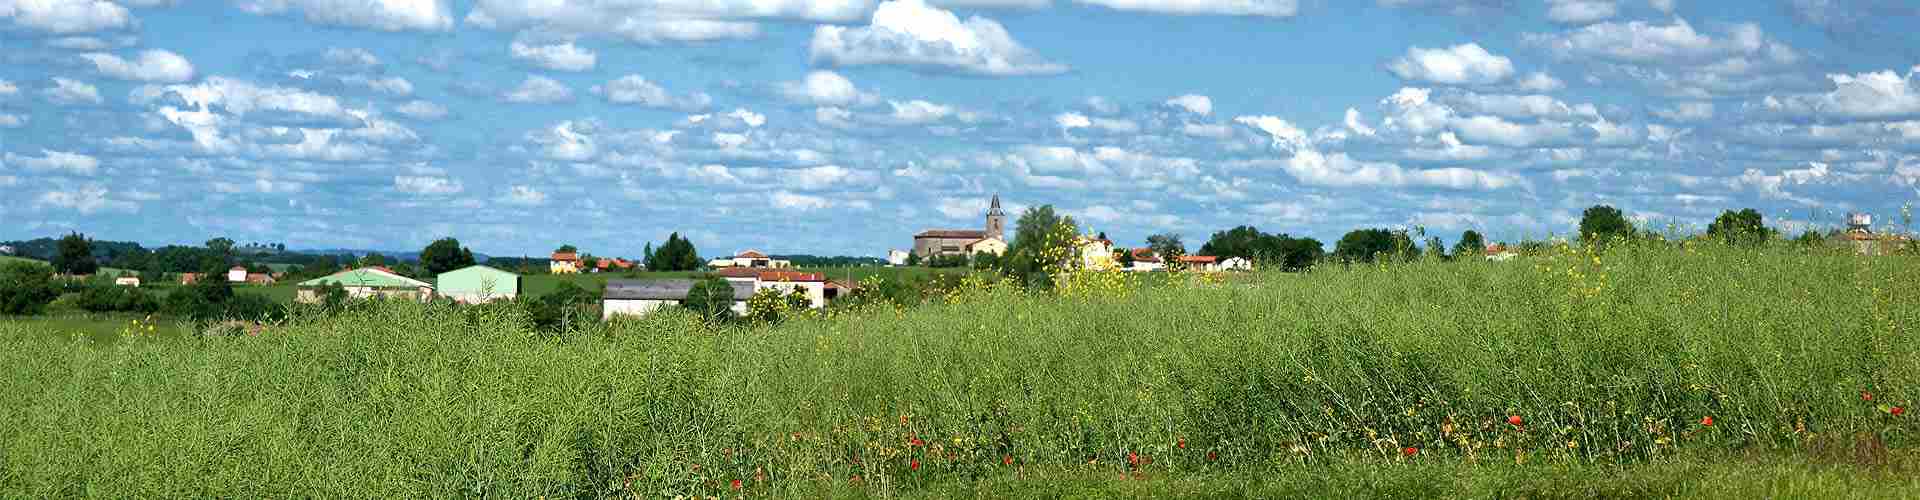 Casas rurales en Lleida
           
           


          
          
          

